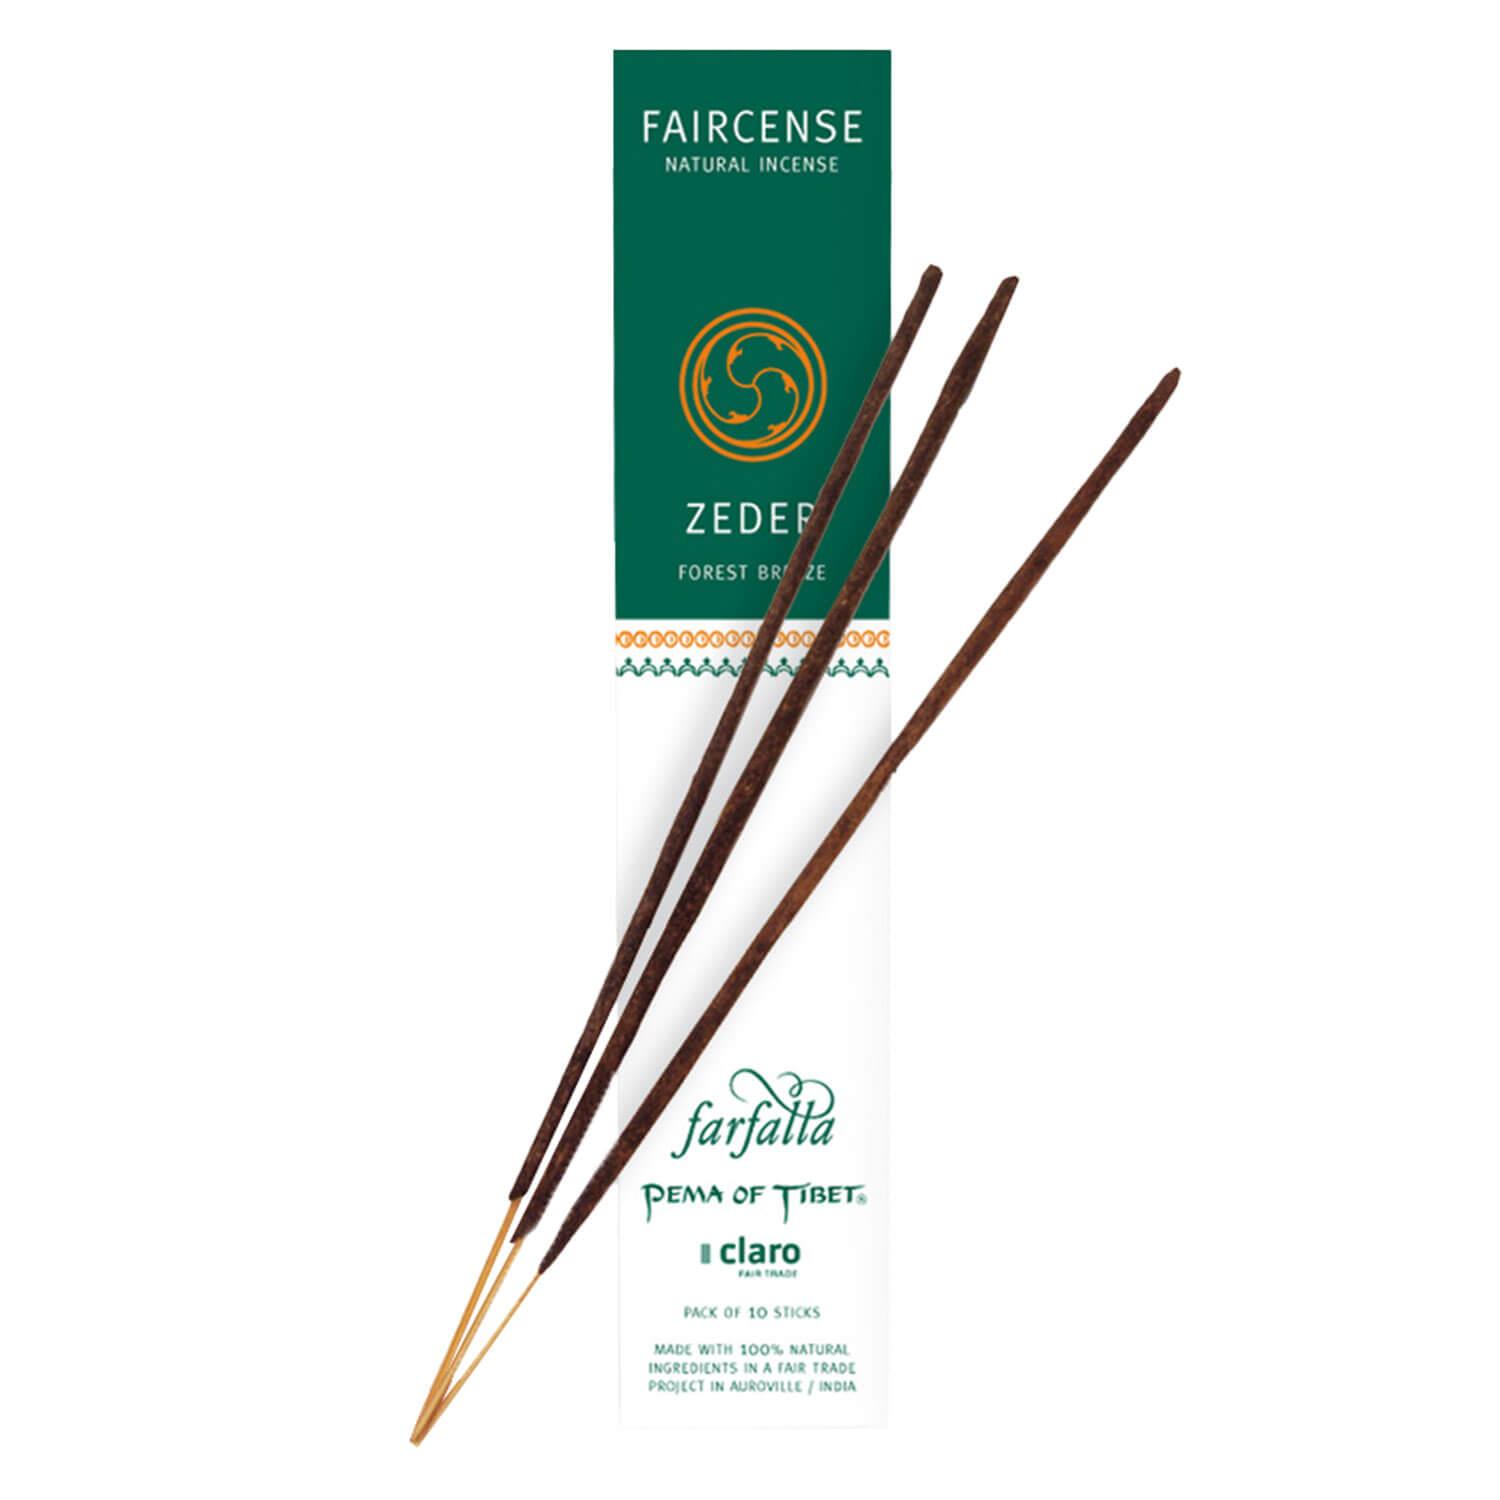 Farfalla Räucherstäbchen - Cedar/Forest Breeze - Faircense Incense Sticks